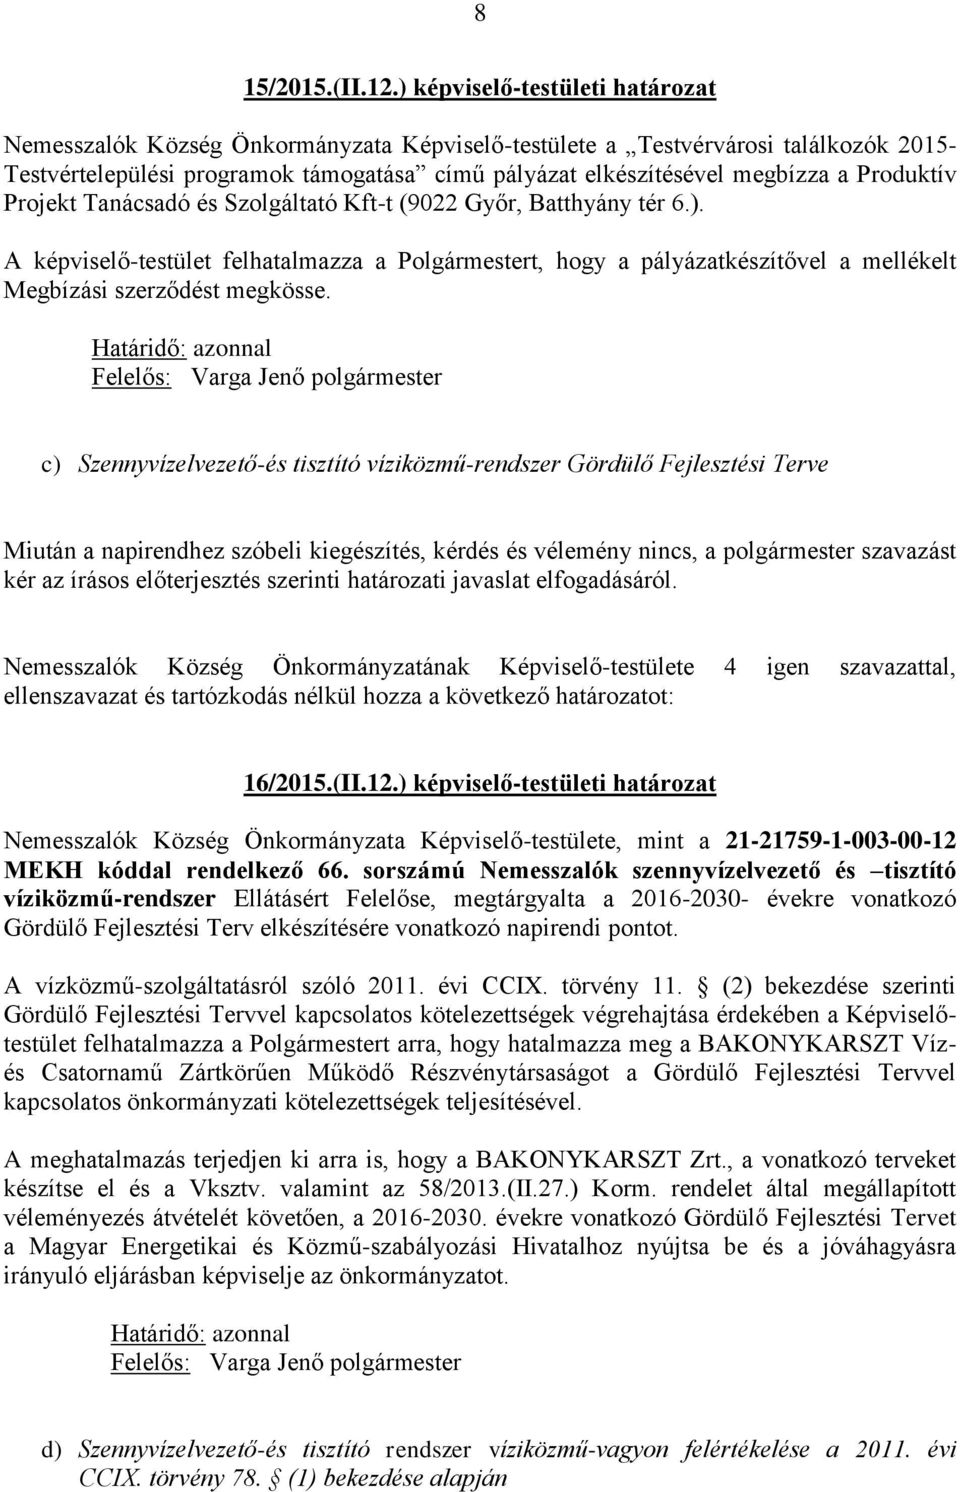 Produktív Projekt Tanácsadó és Szolgáltató Kft-t (9022 Győr, Batthyány tér 6.). A képviselő-testület felhatalmazza a Polgármestert, hogy a pályázatkészítővel a mellékelt Megbízási szerződést megkösse.